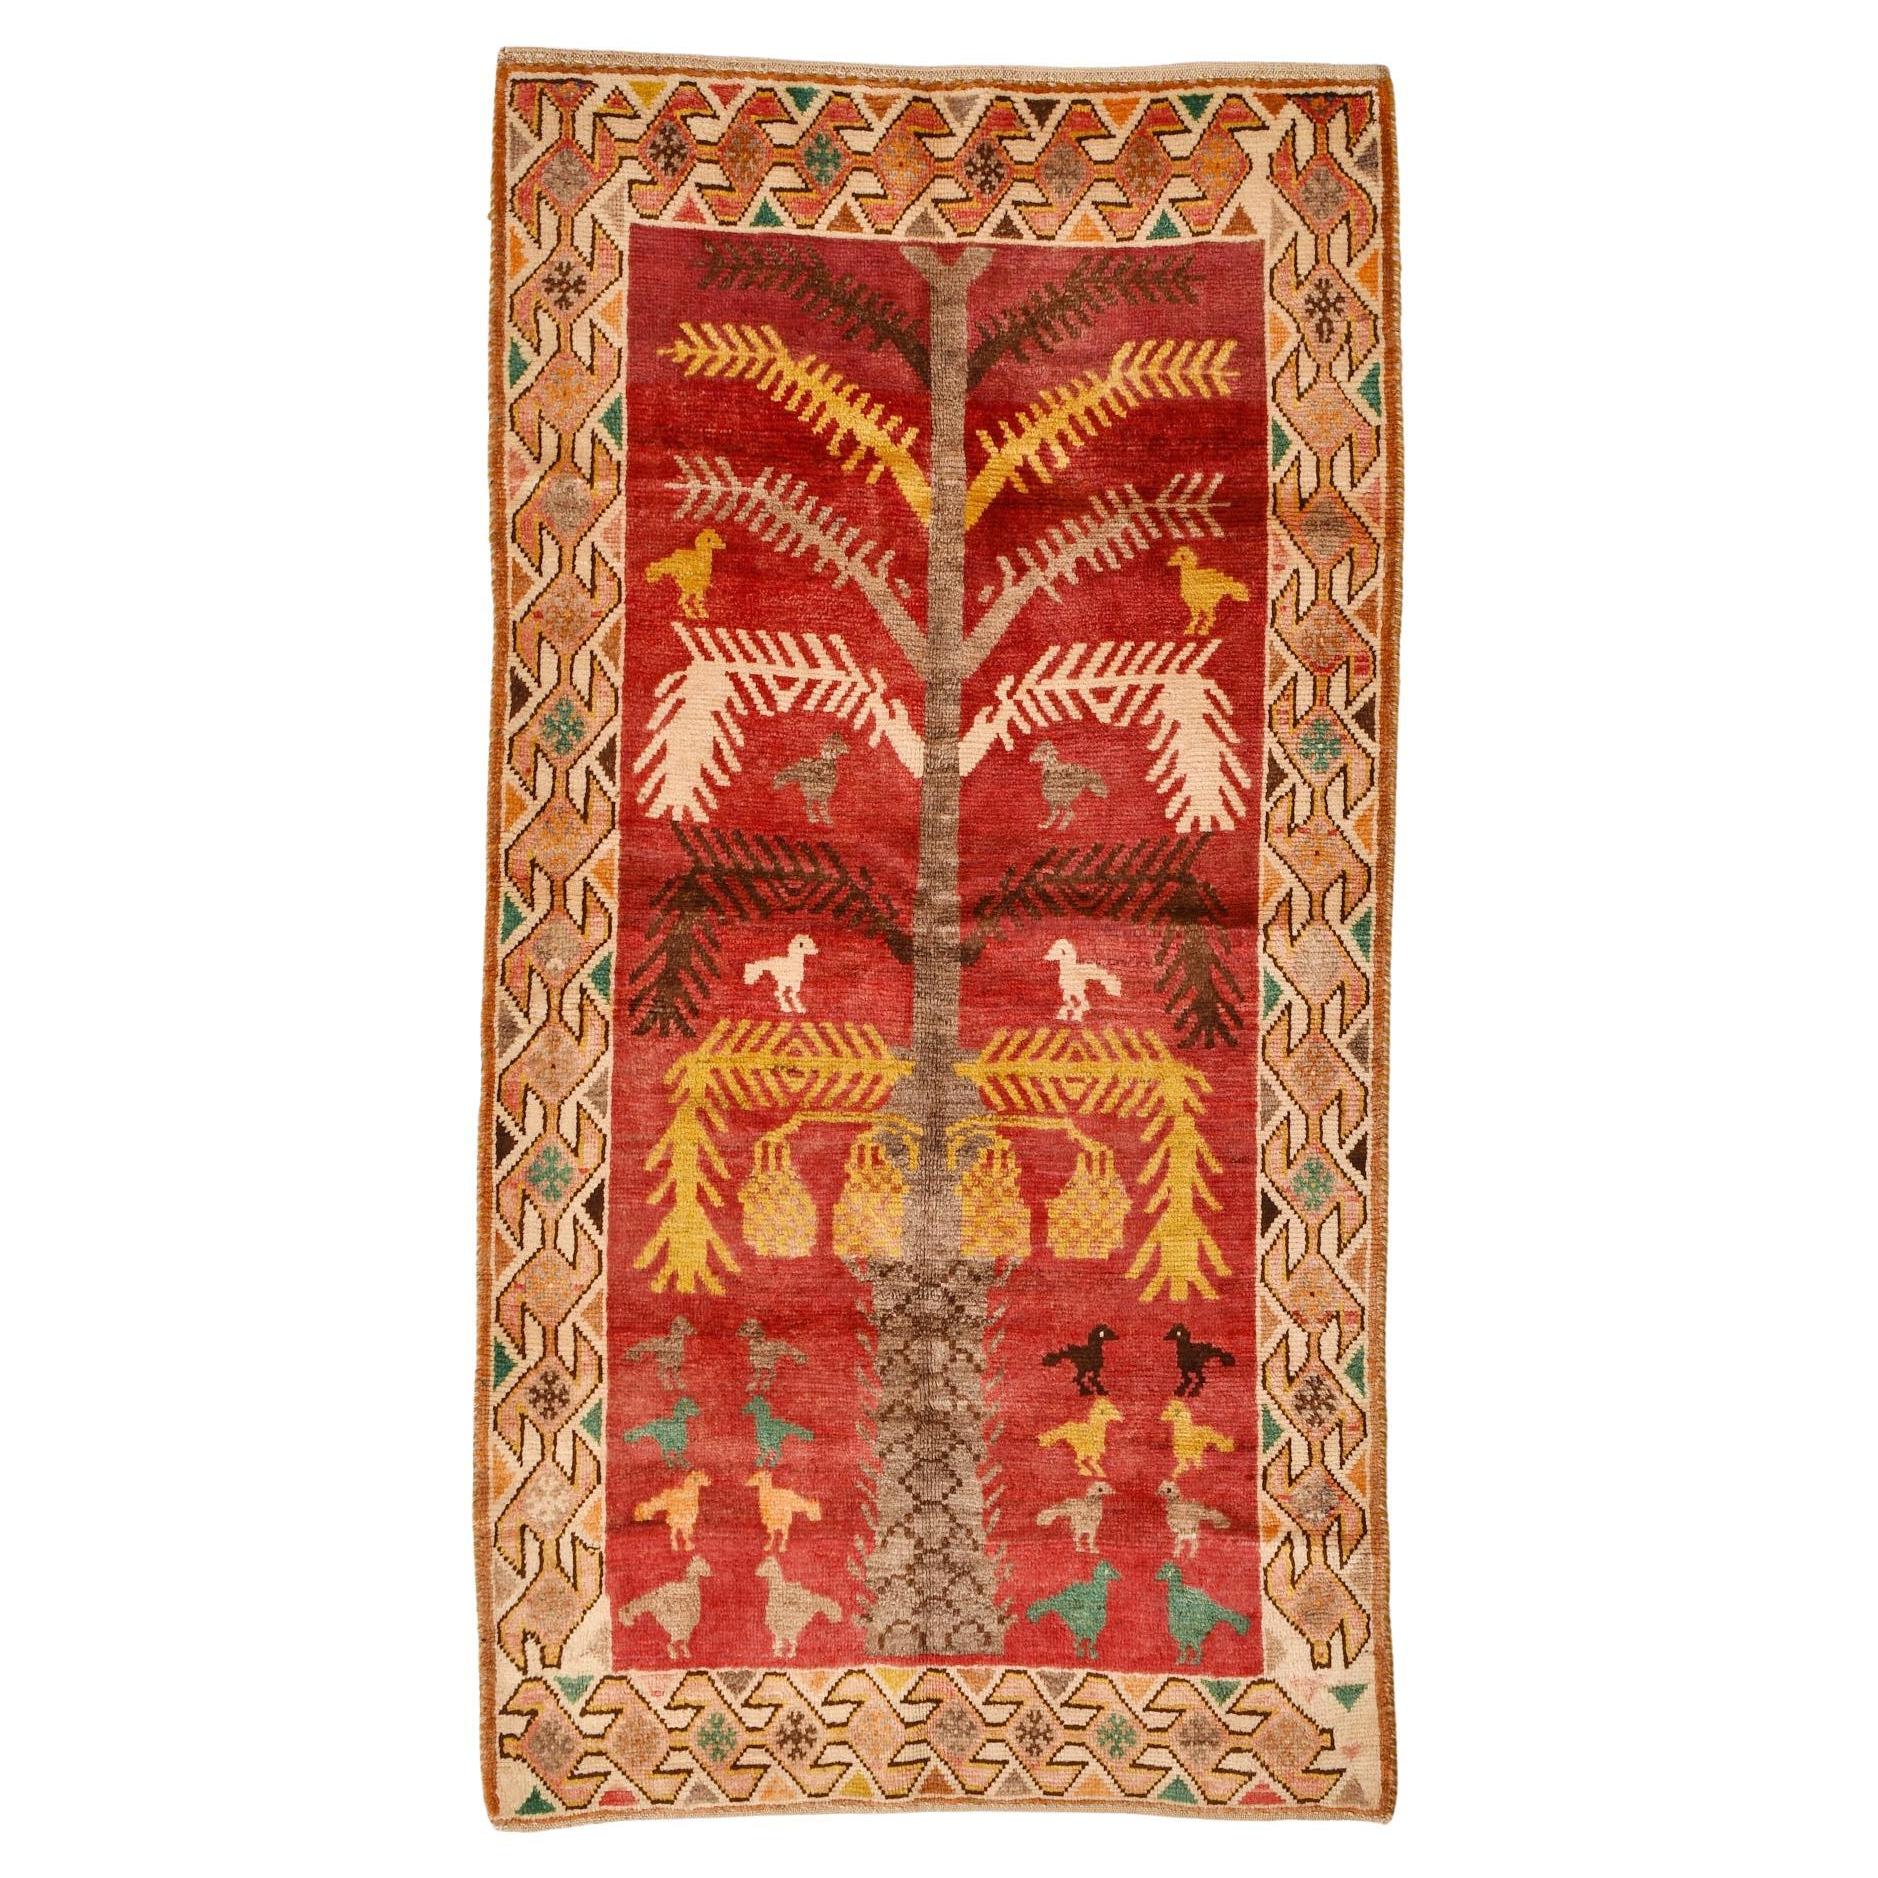 Old Nomadic Oriental Carpet